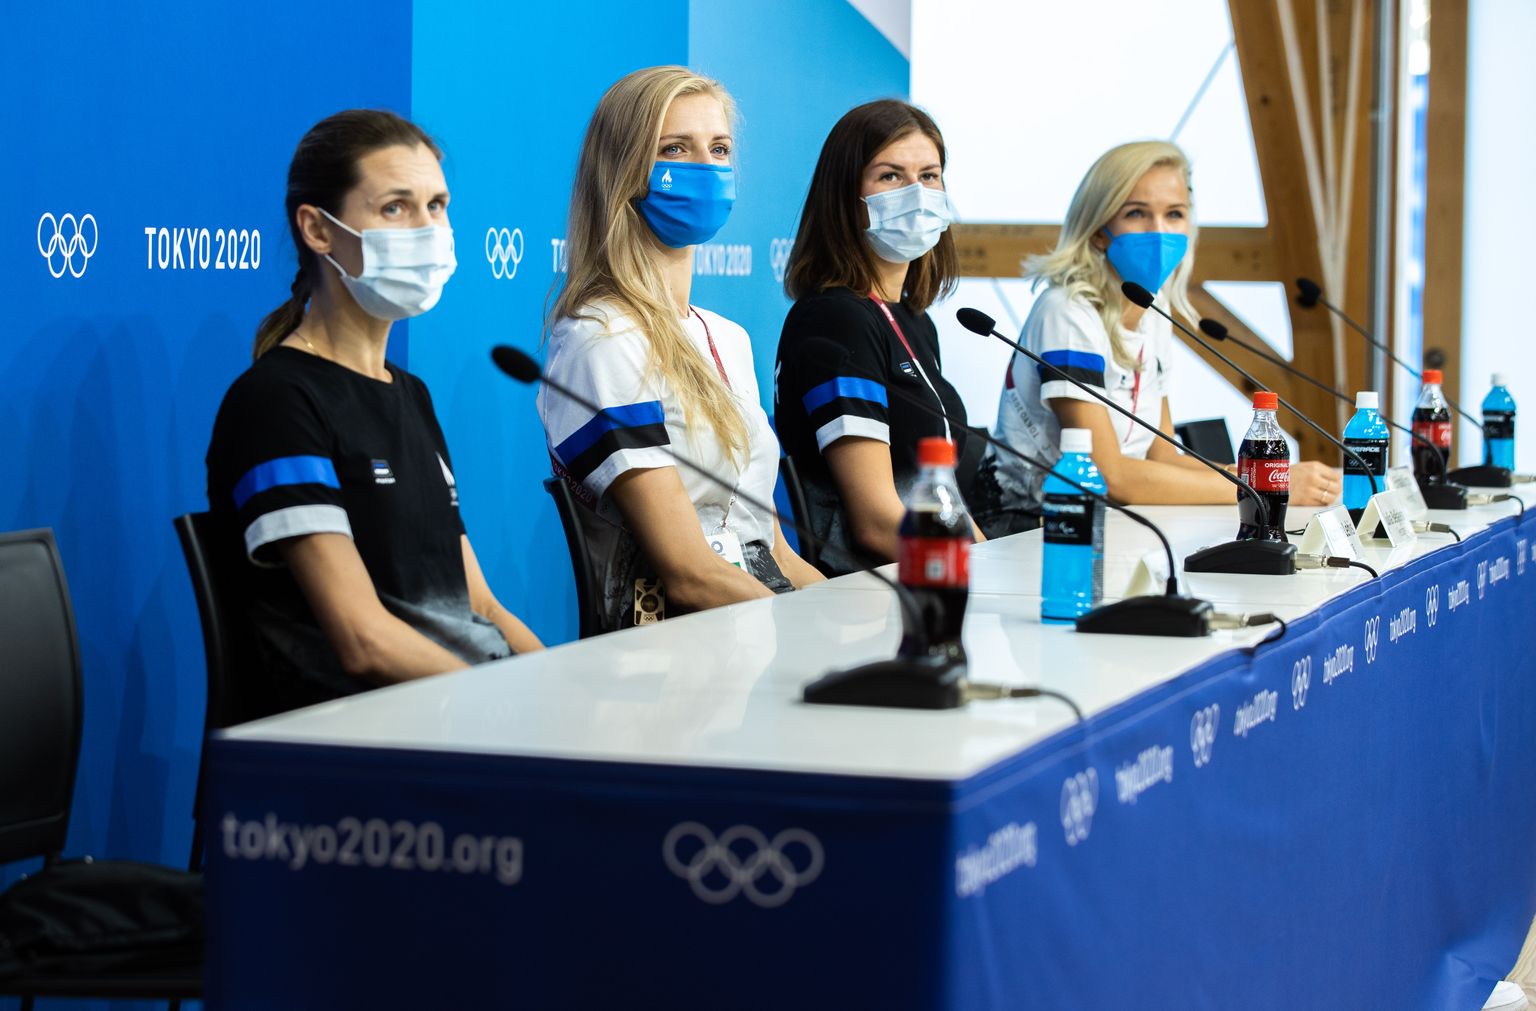 Eesti vehklejad Tokyos võistluseelsel pressikonverentsil. Neist Irina Embrich (vasakult) ei saa individuaalvõistlusel osaleda. Medaleid lähevad püüdma Katrina Lehis, Julia Beljajeva ja Erika Kirpu.